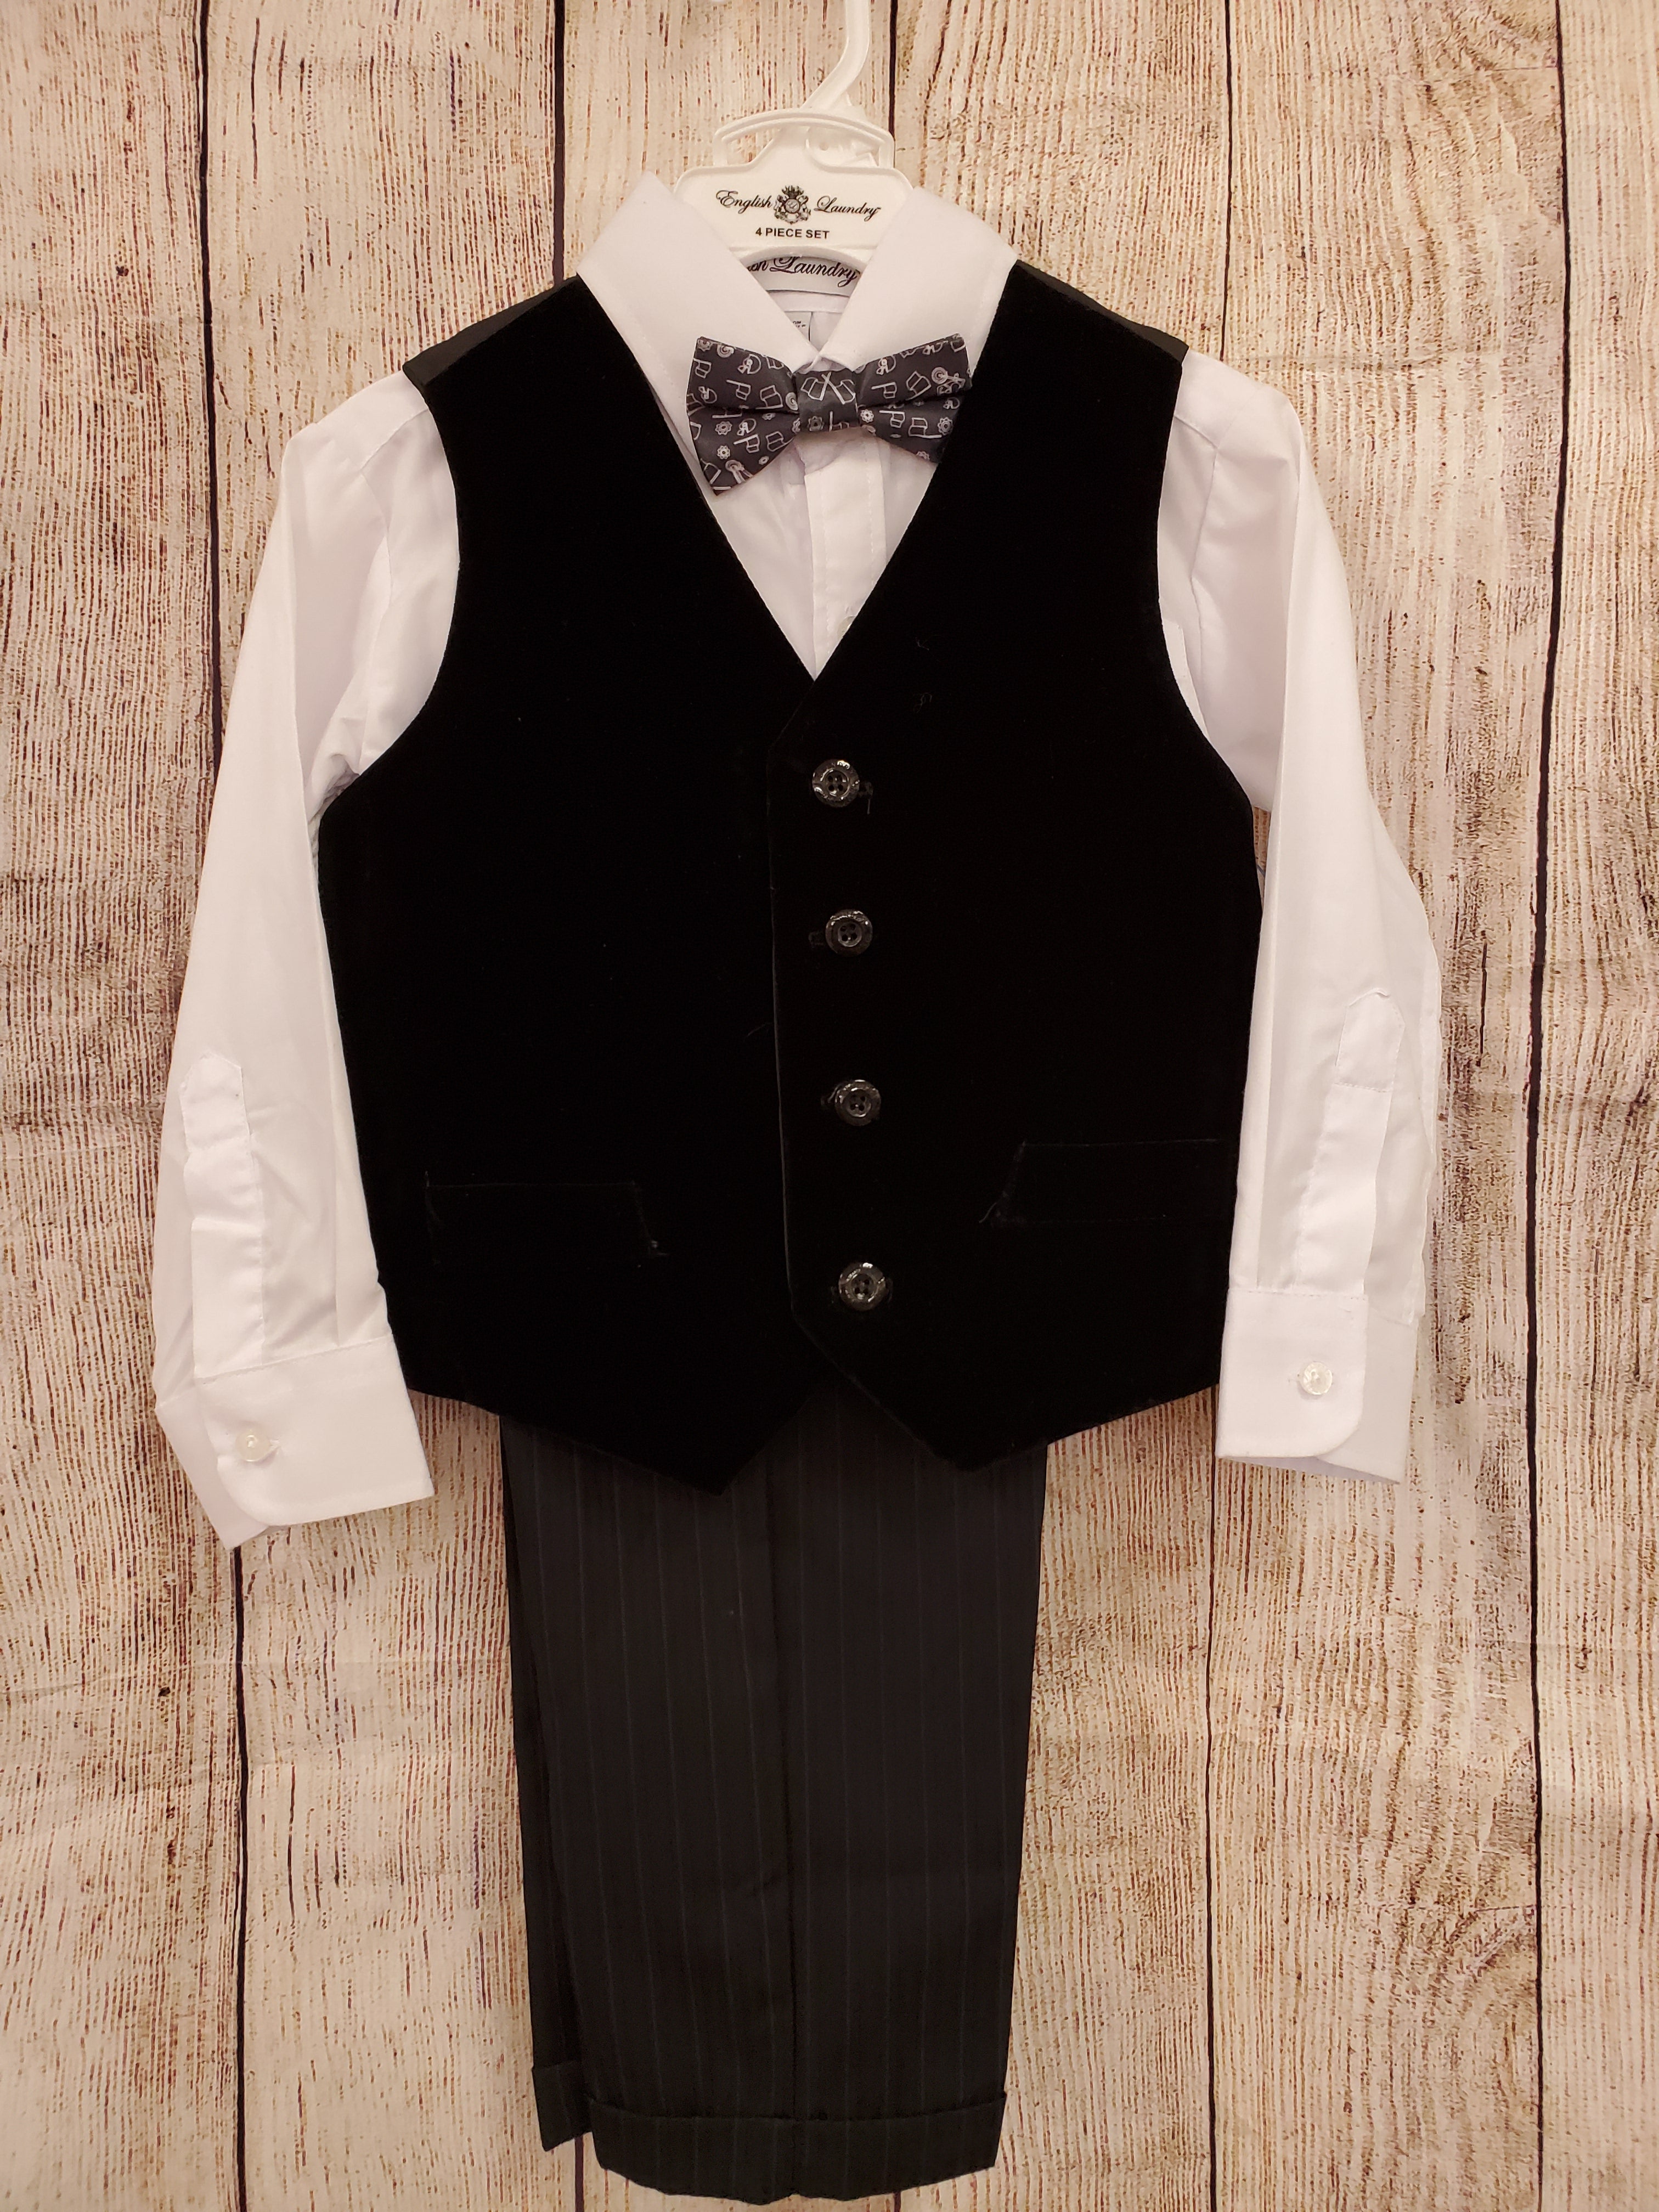 English Laundry boys New 4pc suit gray tie white shirt velour vest black stripe pants 4T